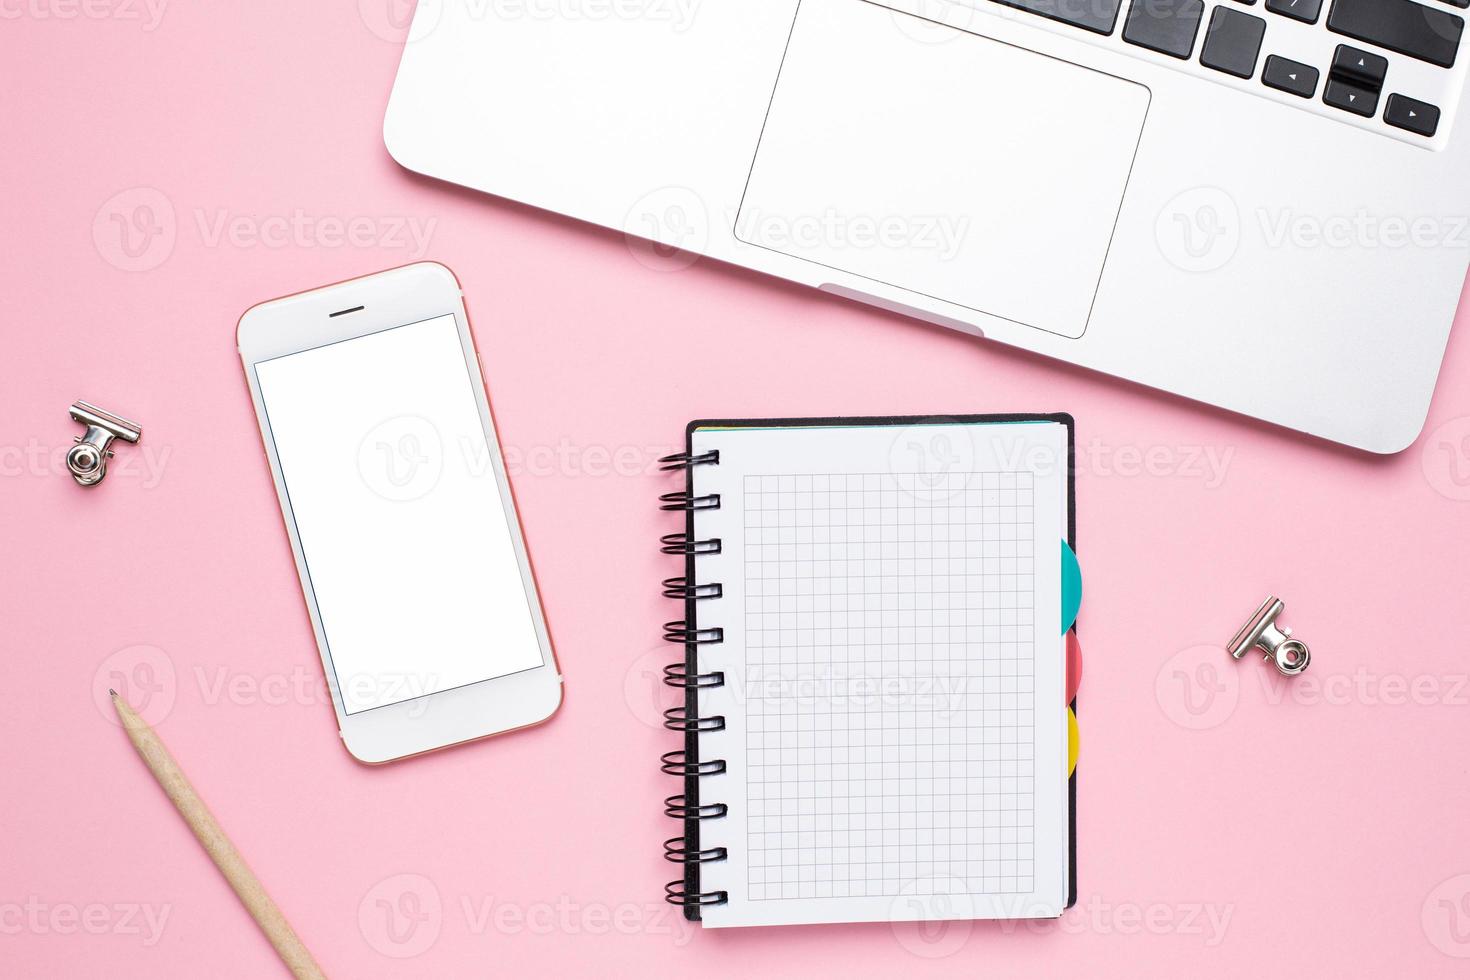 mobil telefon, bärbar dator och anteckningsbok i en bur på en rosa bakgrund foto